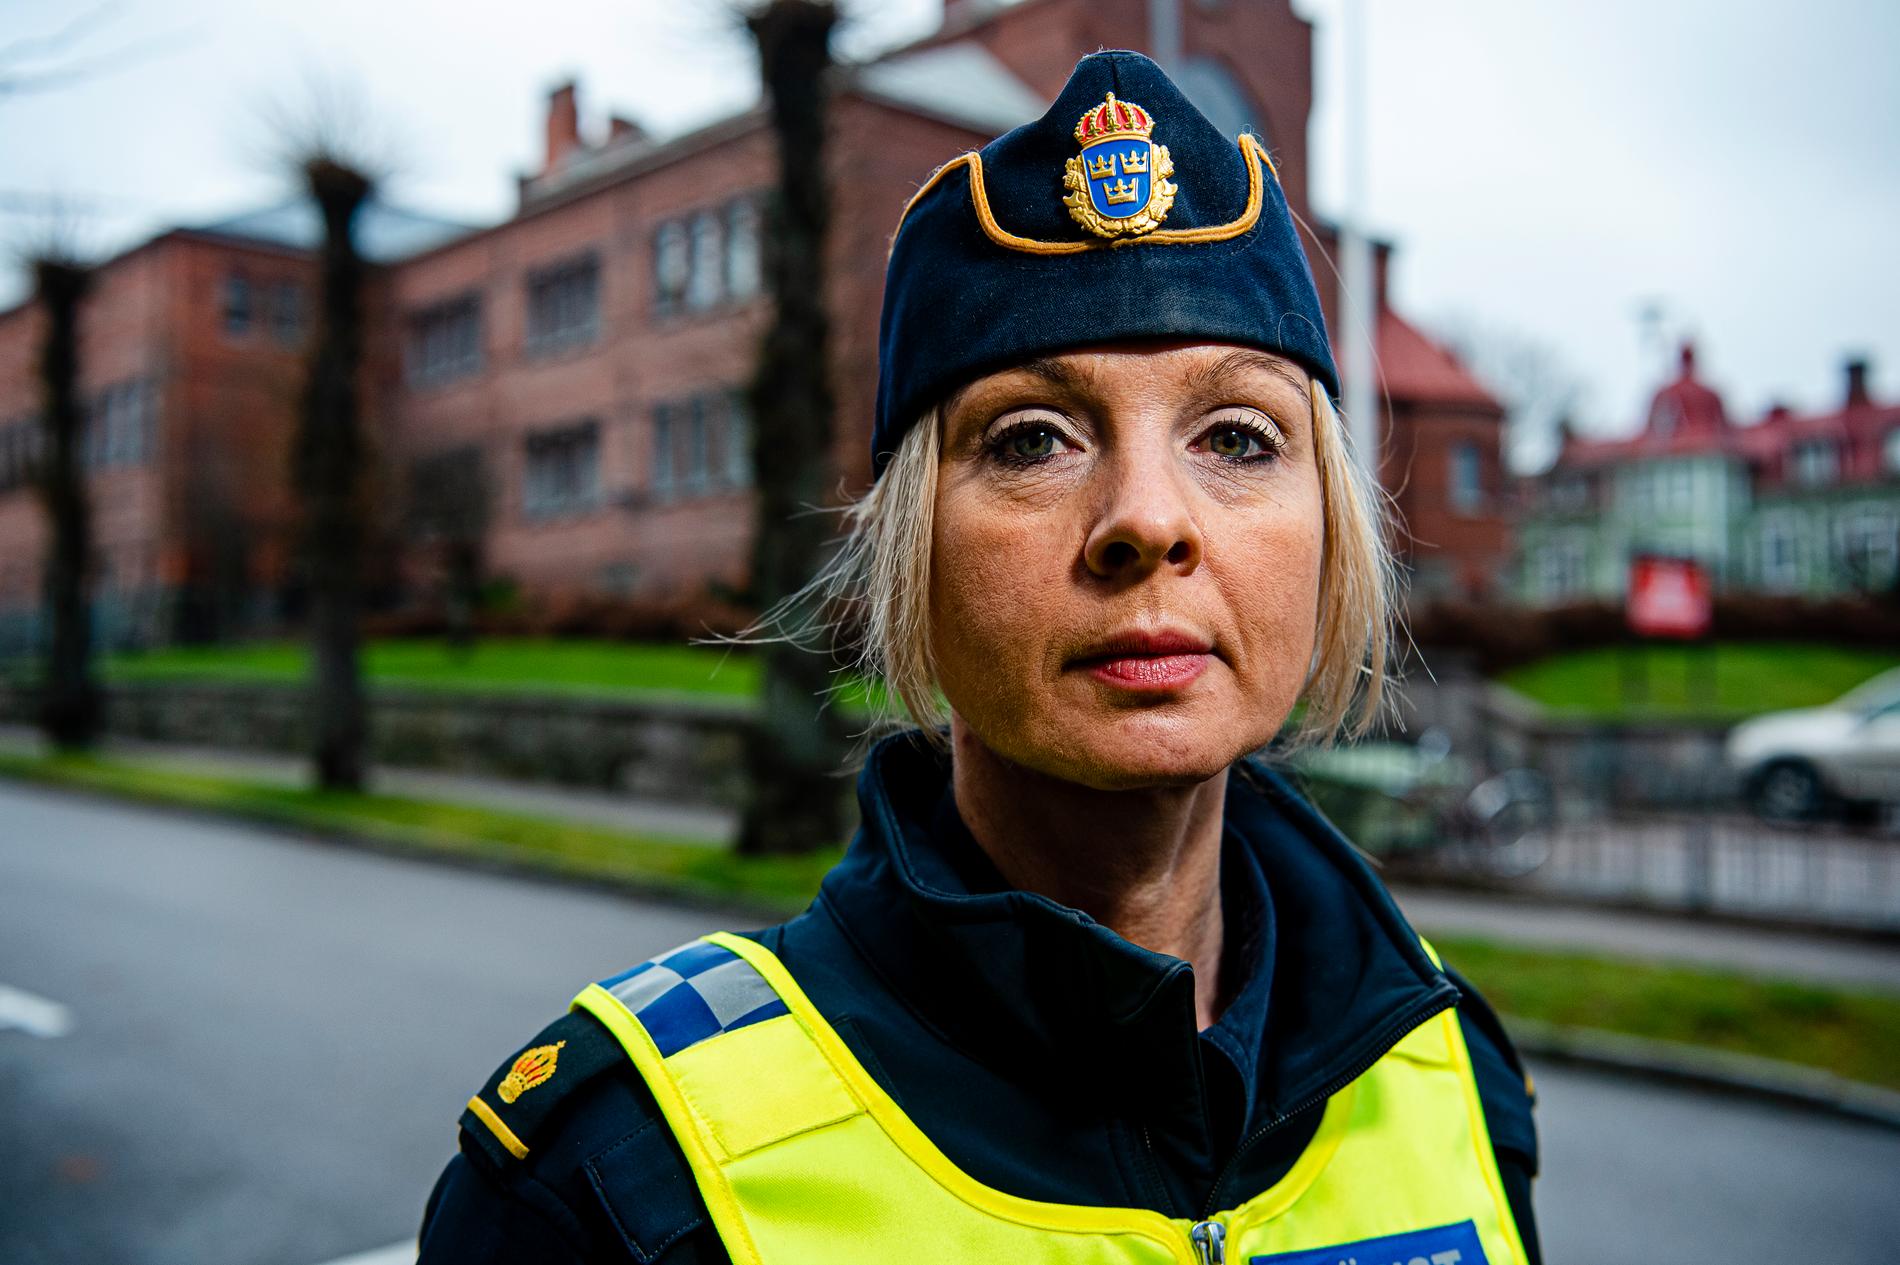 – Vårt fokus och vår prioritet är att hitta flickan, säger Anna Göranson, polisens presstalesperson i region väst.